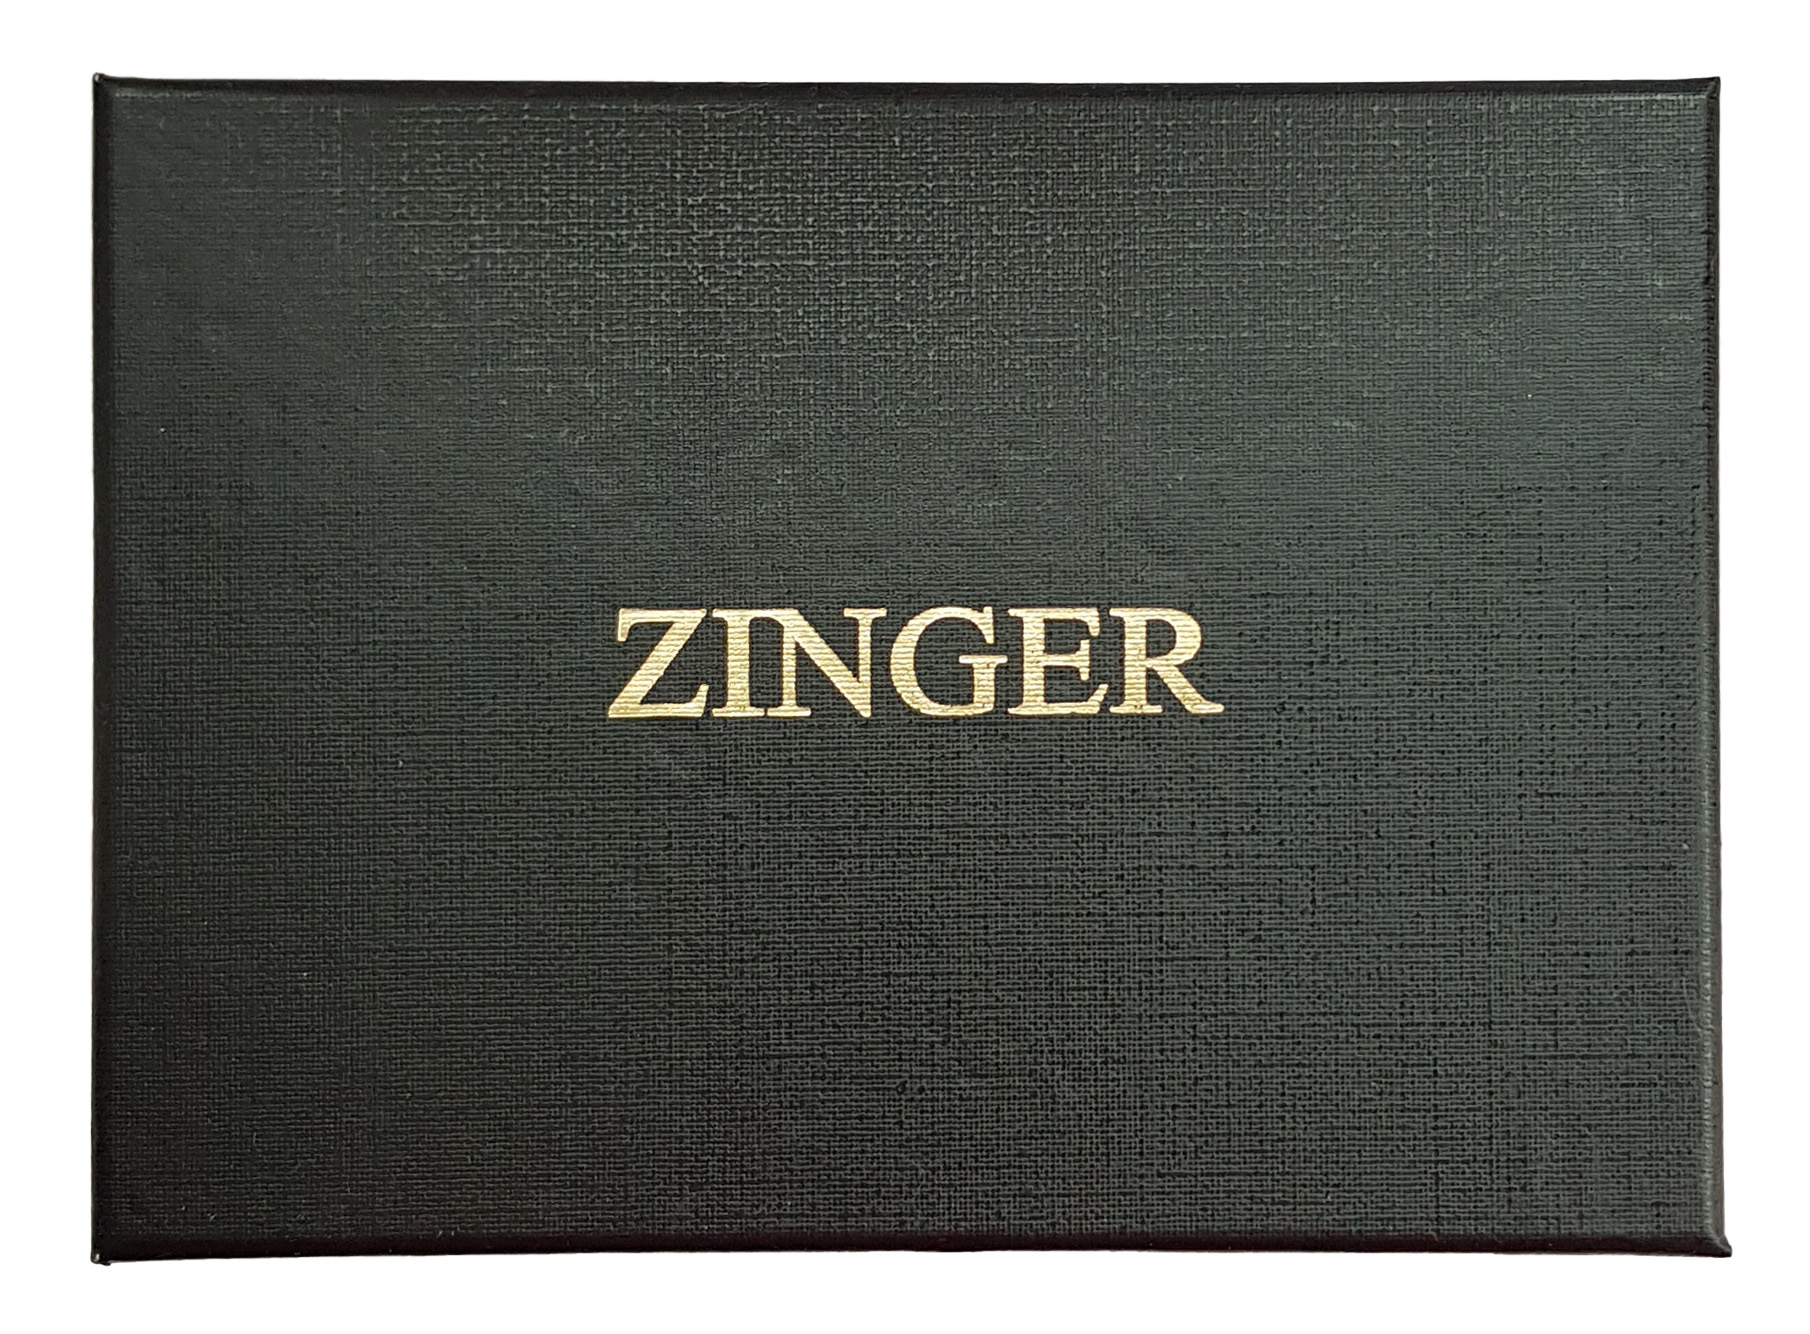 Маникюрный набор Zinger Premium-качества бордовый 9 предметов + пинцет маникюрный набор premium качества zinger msfc 1001 3 sm 9 предметов пинцет бордовый